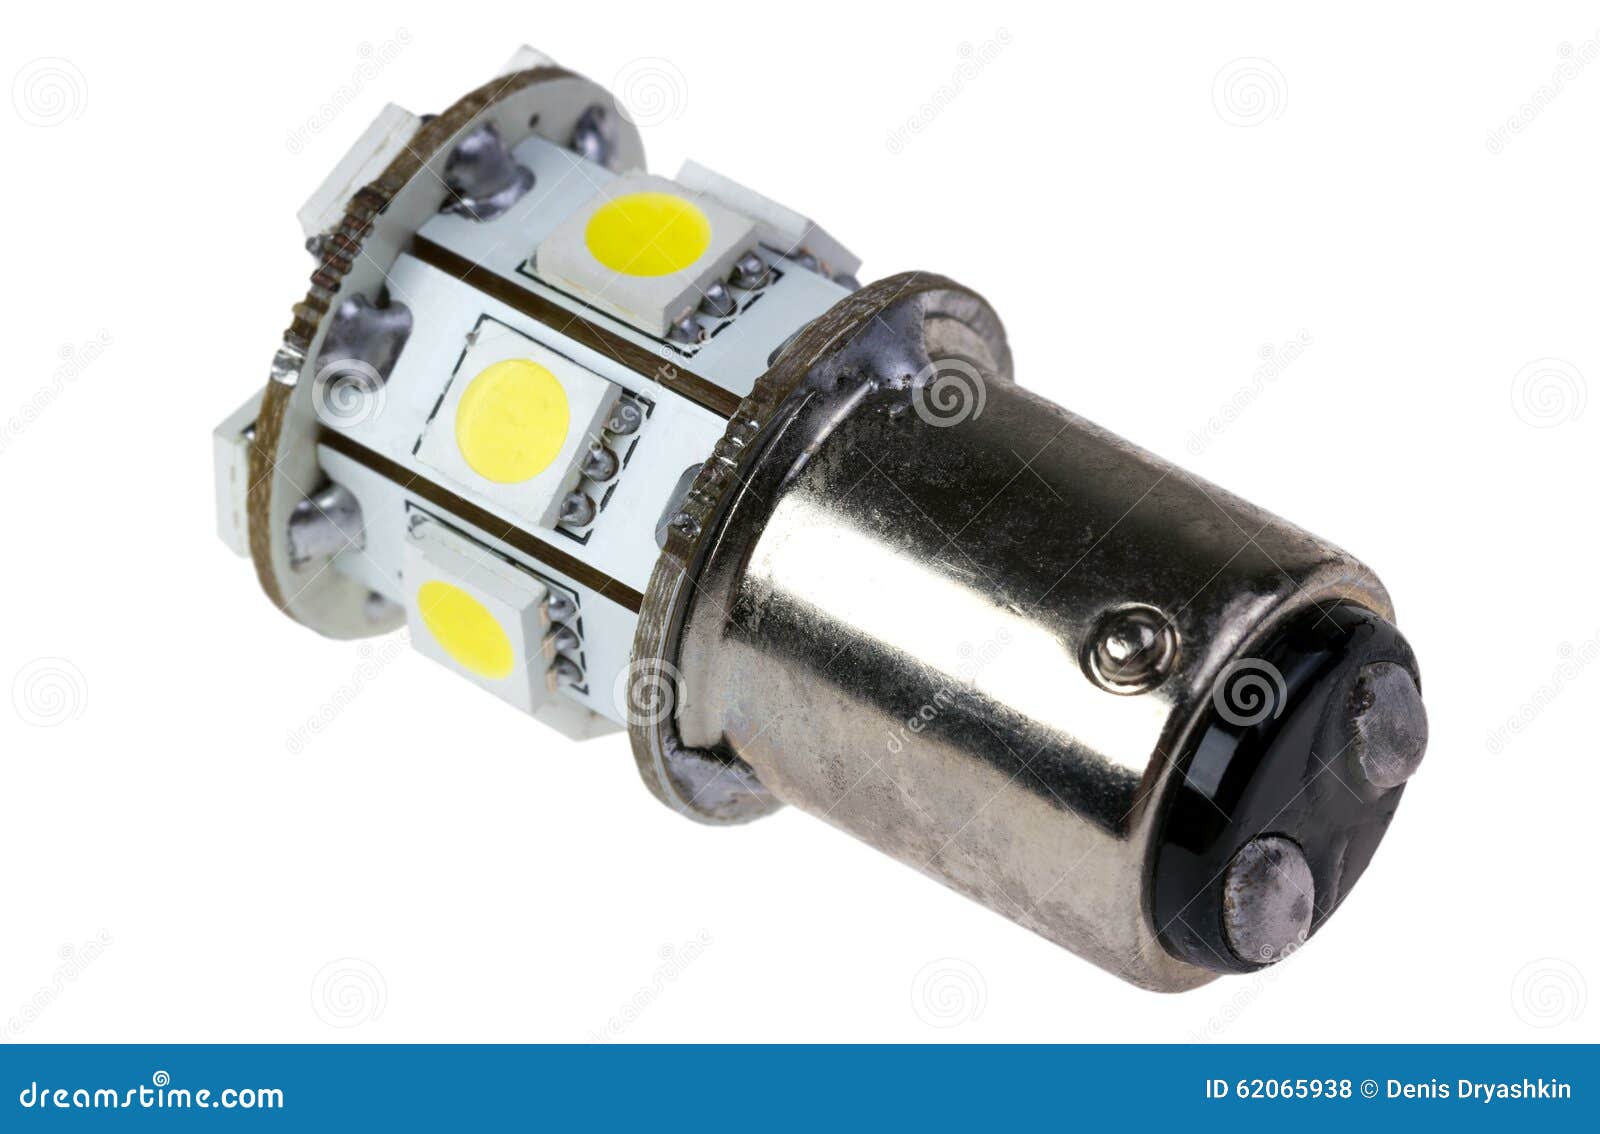 Можно ли заменить лампы дневных ходовых огней светодиодными на VW Passat B7? фото